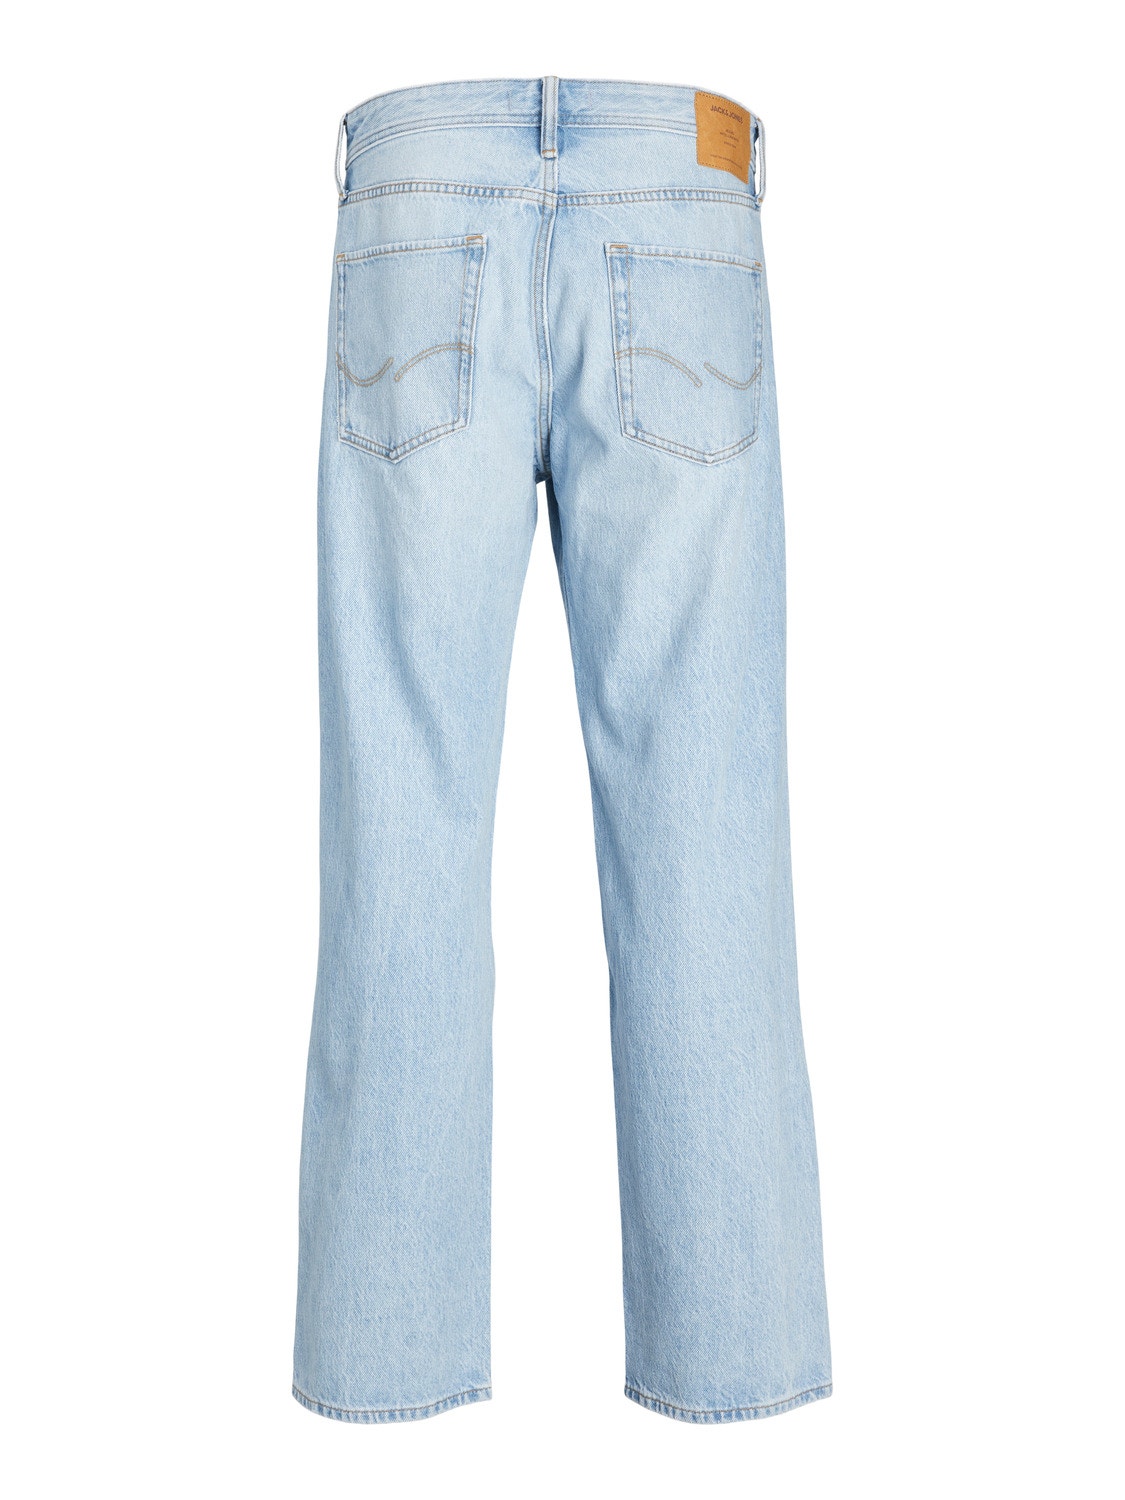 JJIEDDIE JJORIGINAL SBD 102 Loose fit jeans with 50% discount